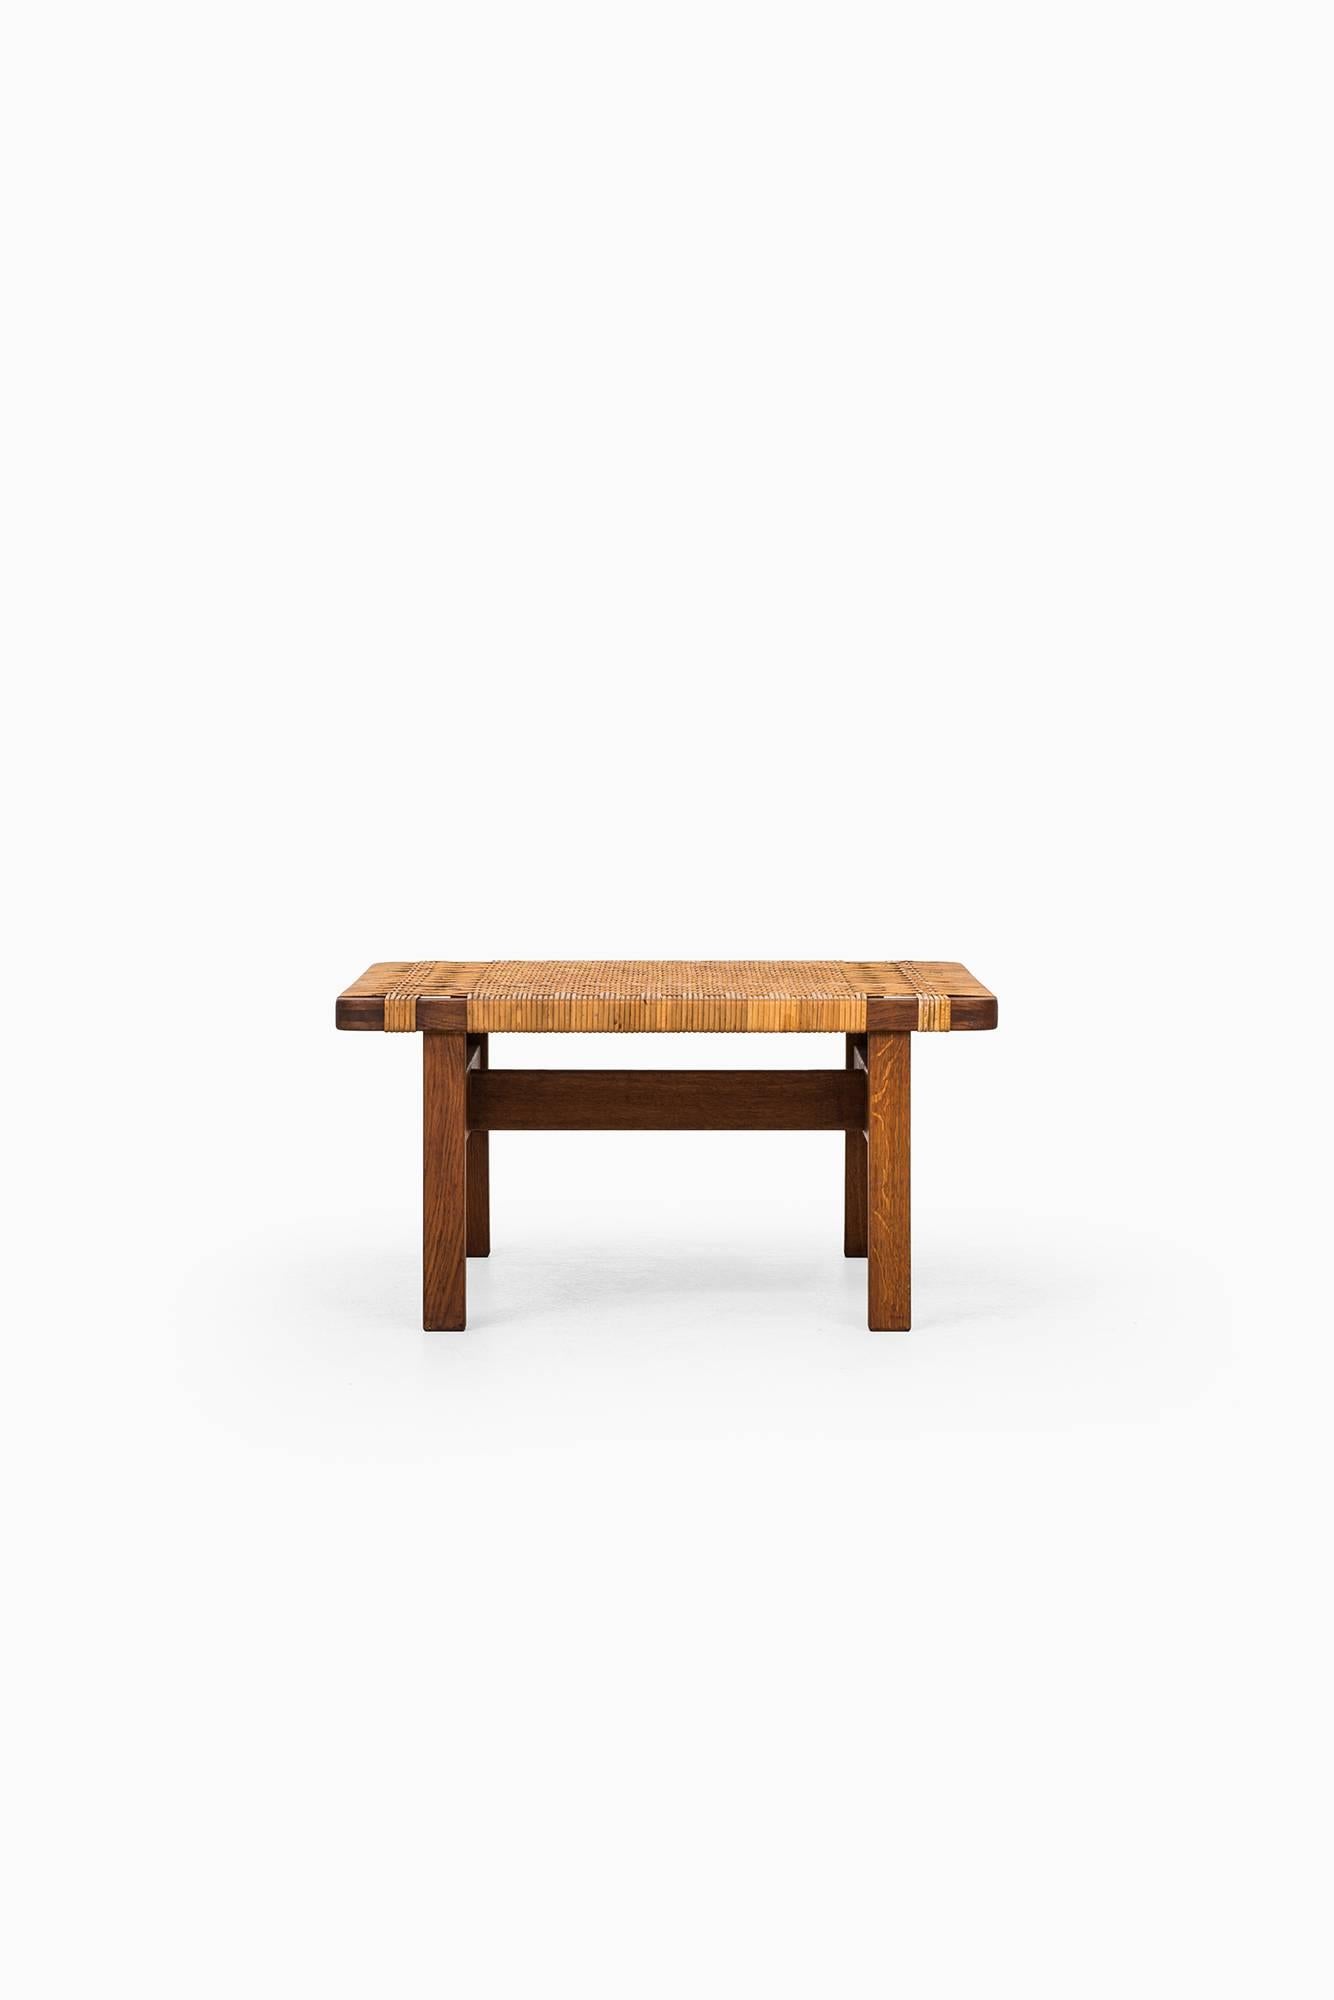 Scandinavian Modern Børge Mogensen Side Table in Oak and Cane by Fredericia Stolefabrik in Denmark